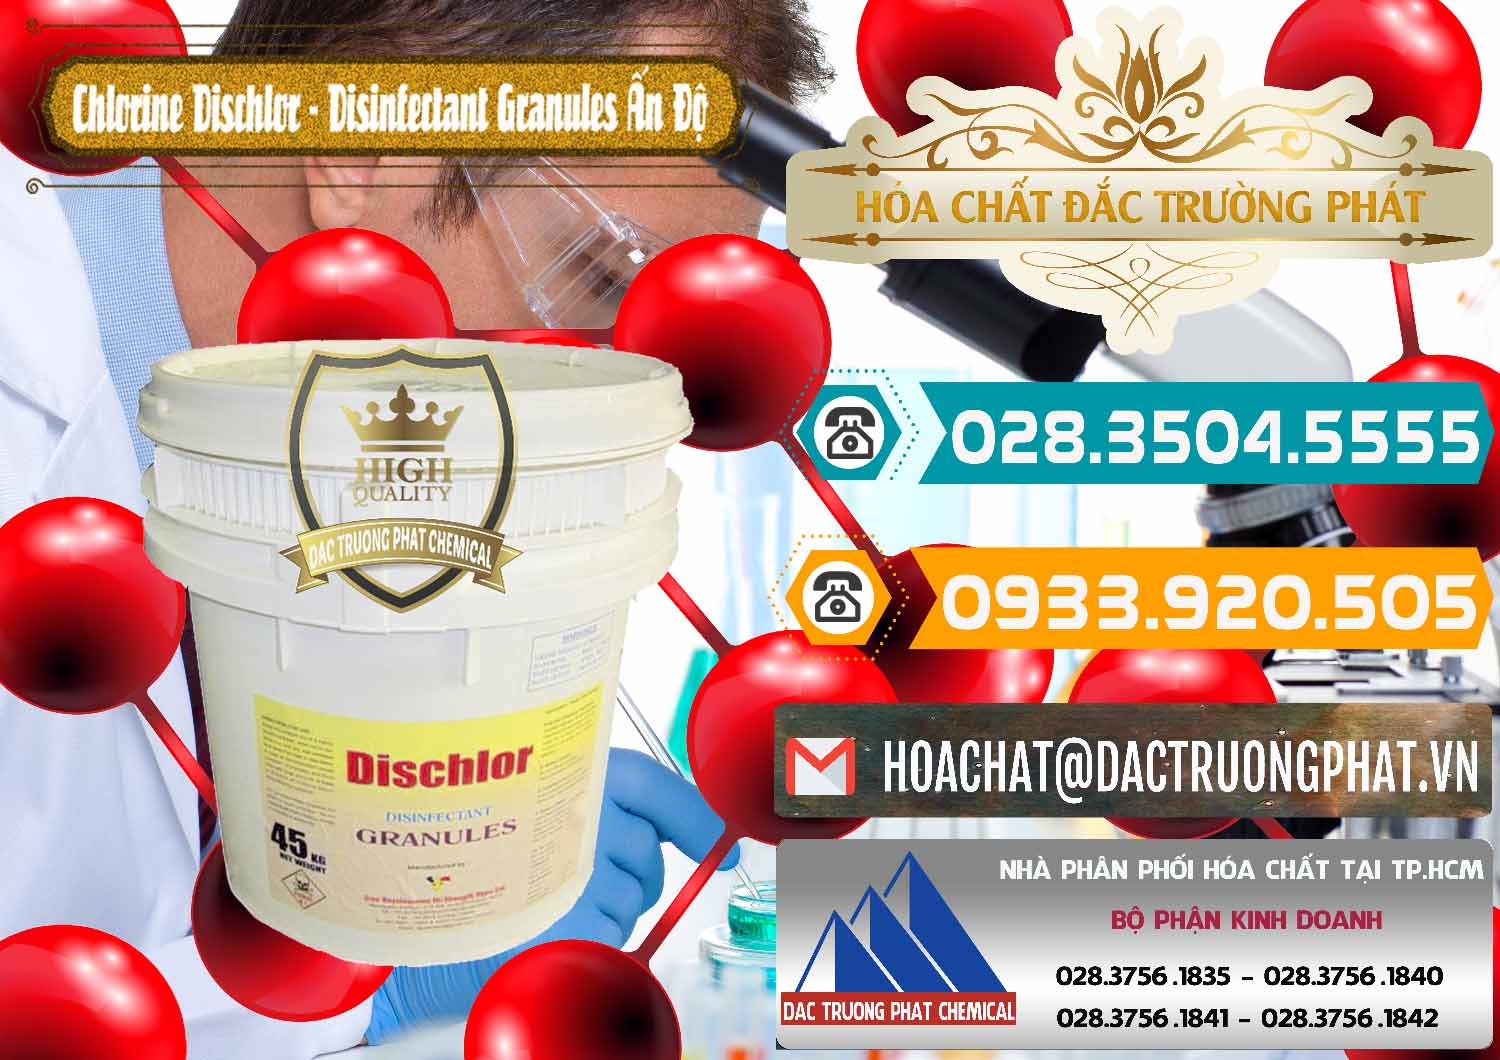 Chuyên bán _ cung ứng Chlorine – Clorin 70% Dischlor - Disinfectant Granules Ấn Độ India - 0248 - Cty chuyên kinh doanh ( phân phối ) hóa chất tại TP.HCM - congtyhoachat.vn